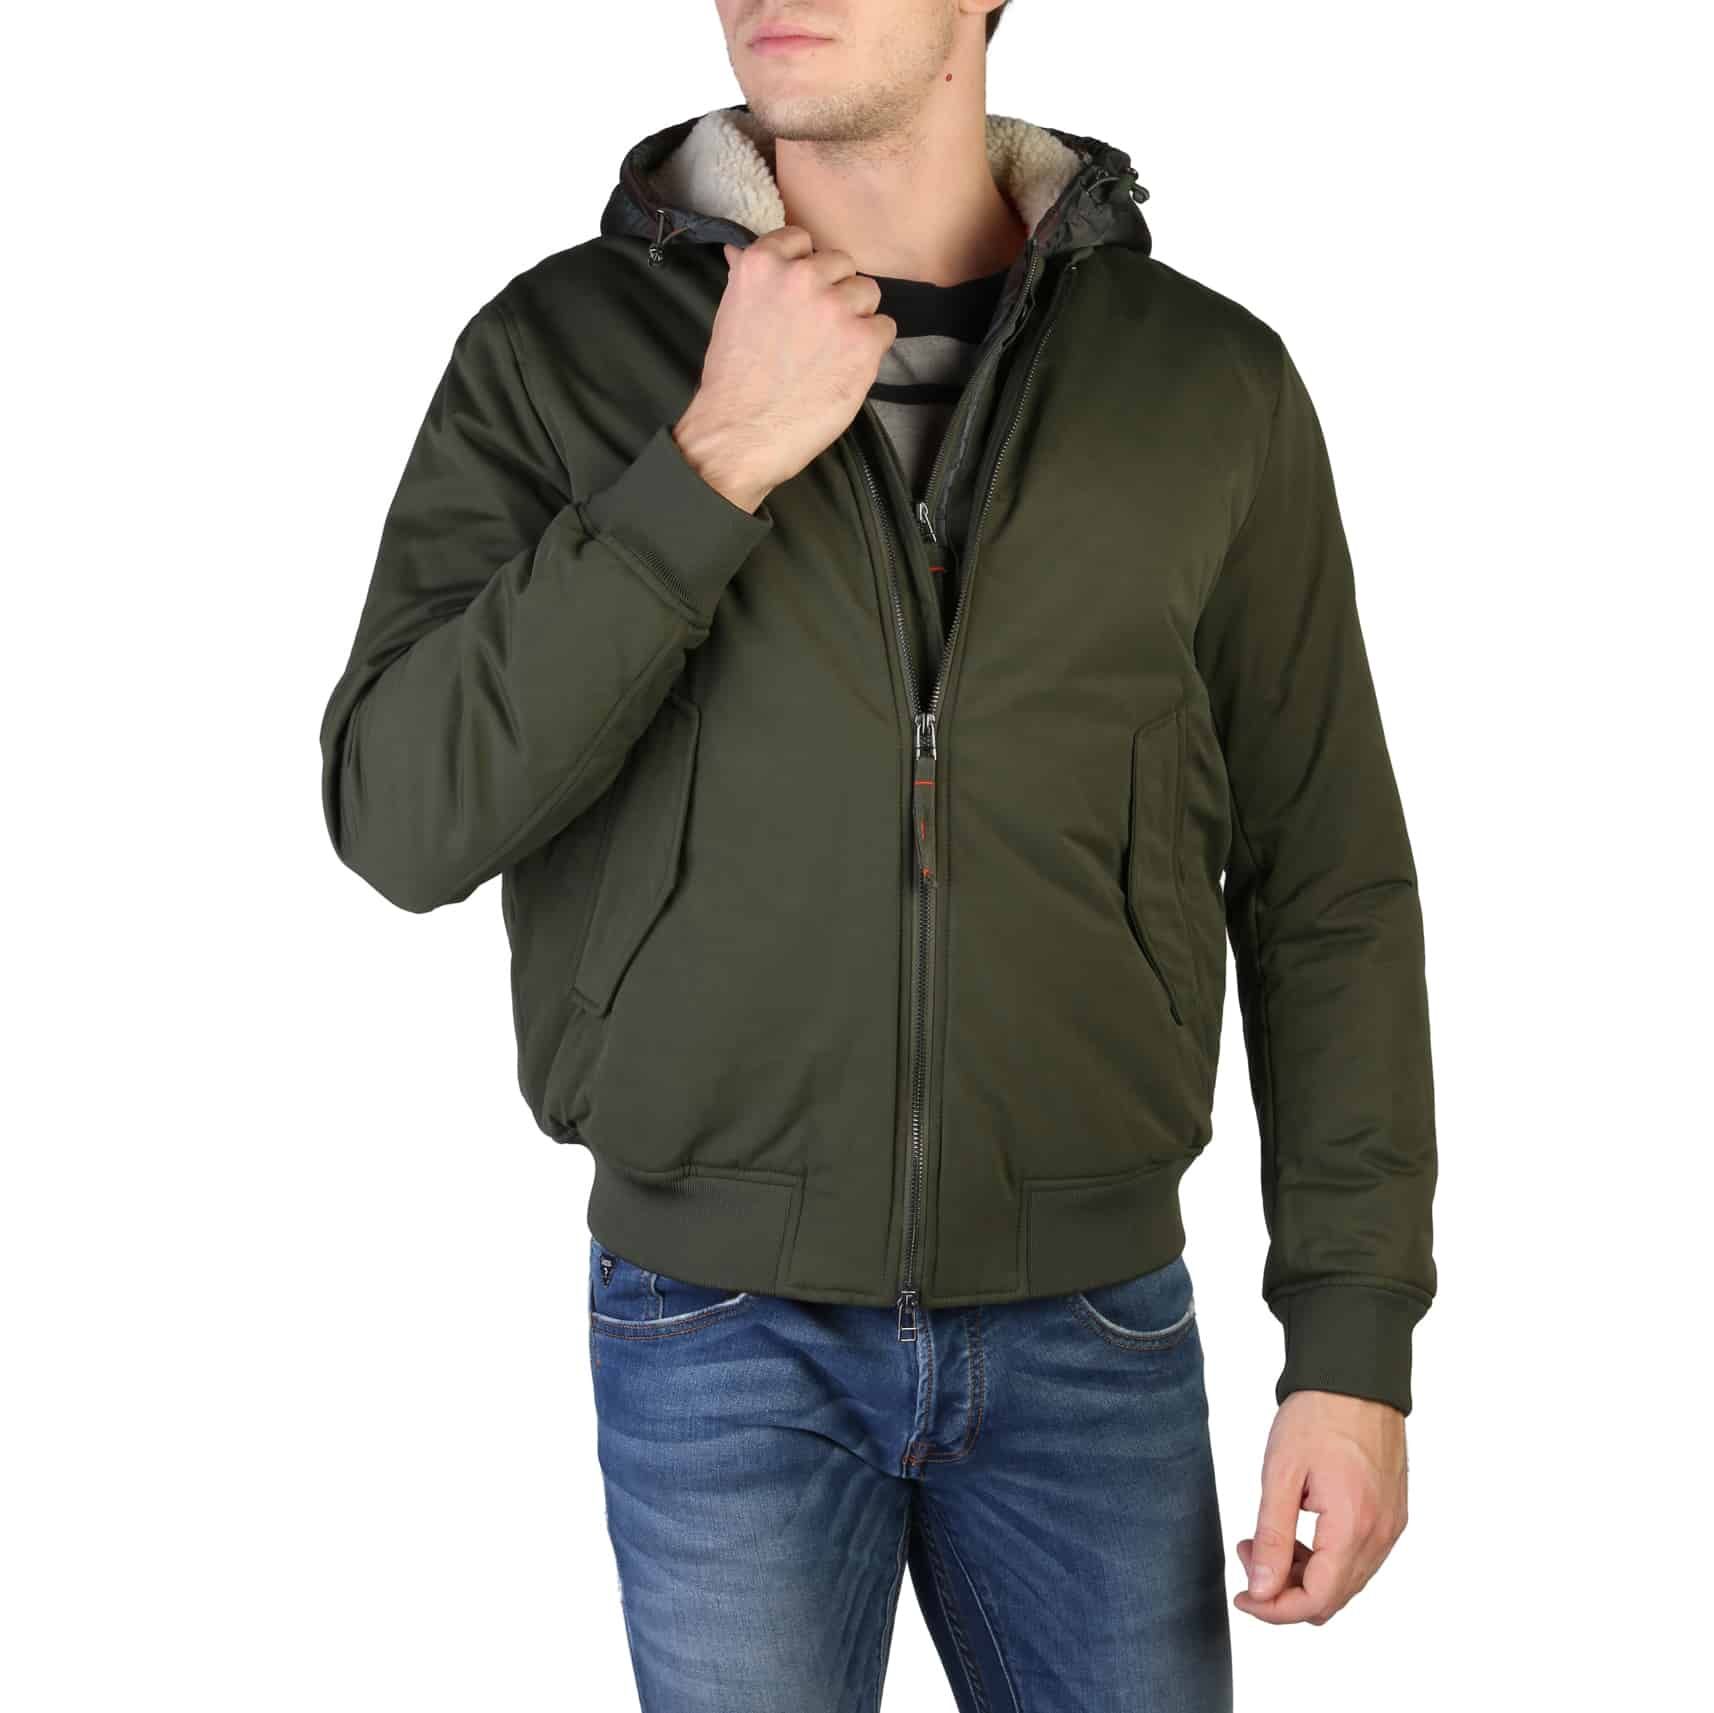 ARMANI Giacca da uomo colore verde militare 2 IN 1 – SMANICATO INCLUSO Abbigliamento